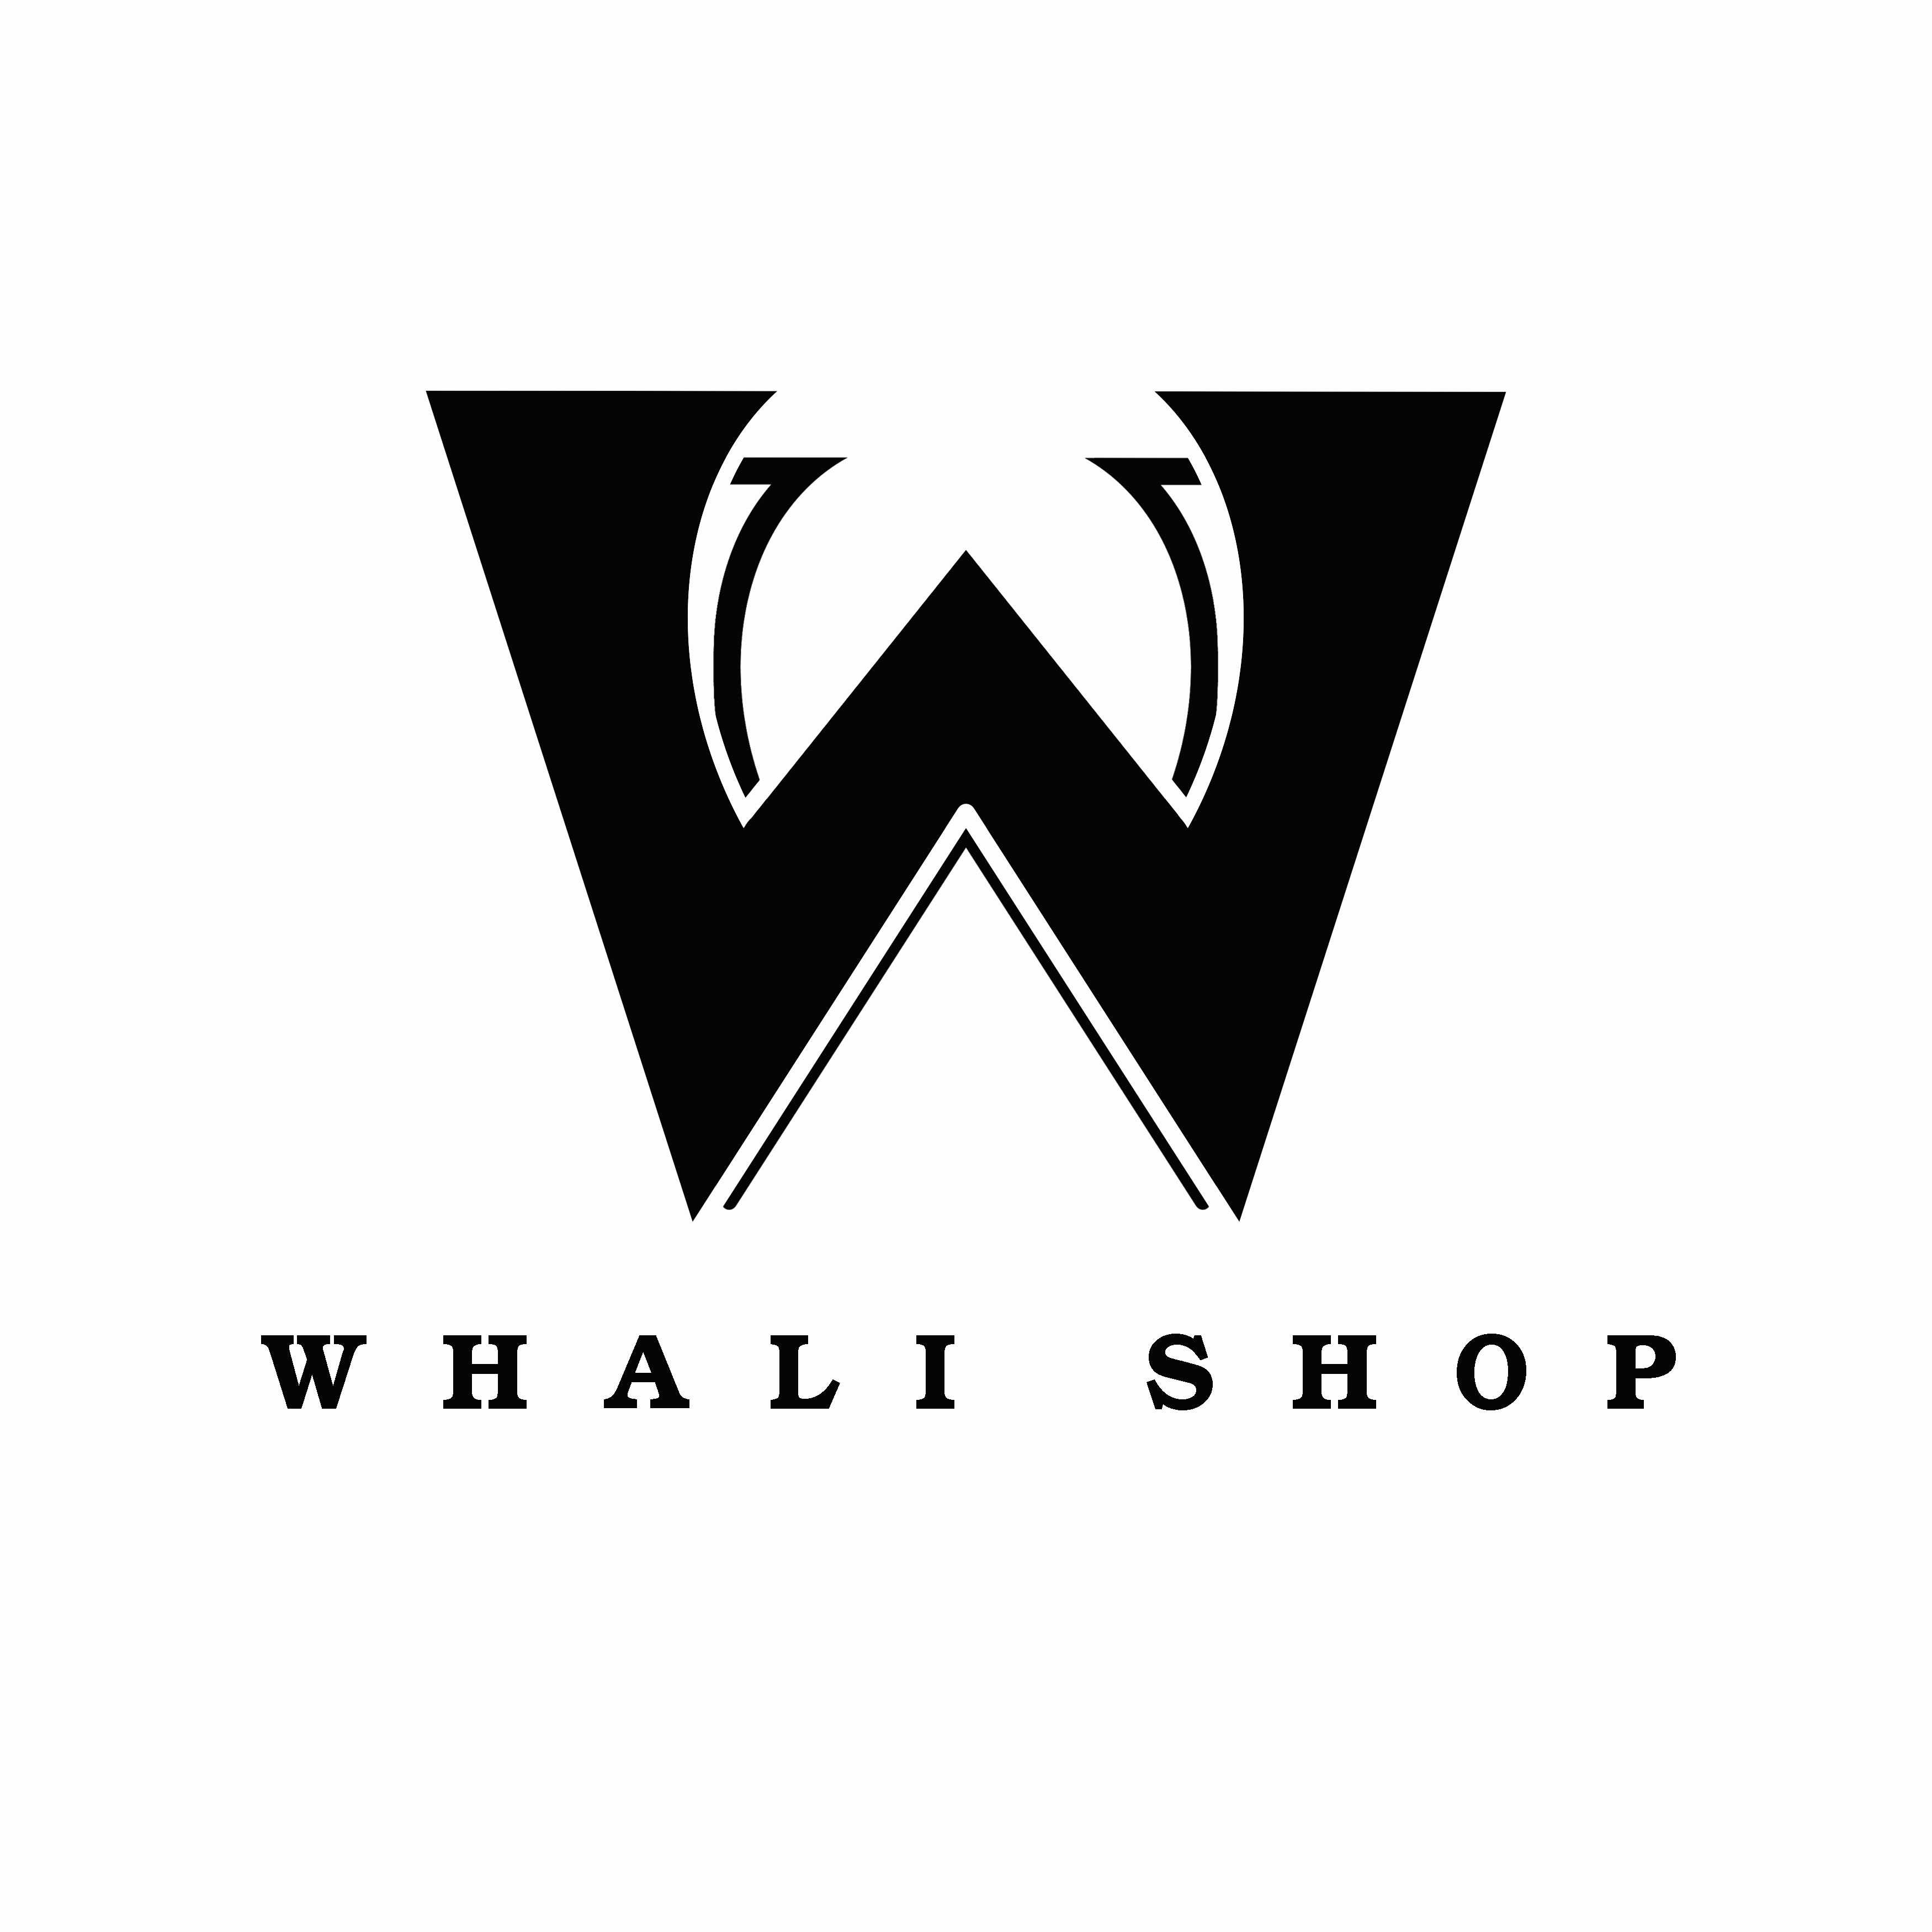 Whali Shop